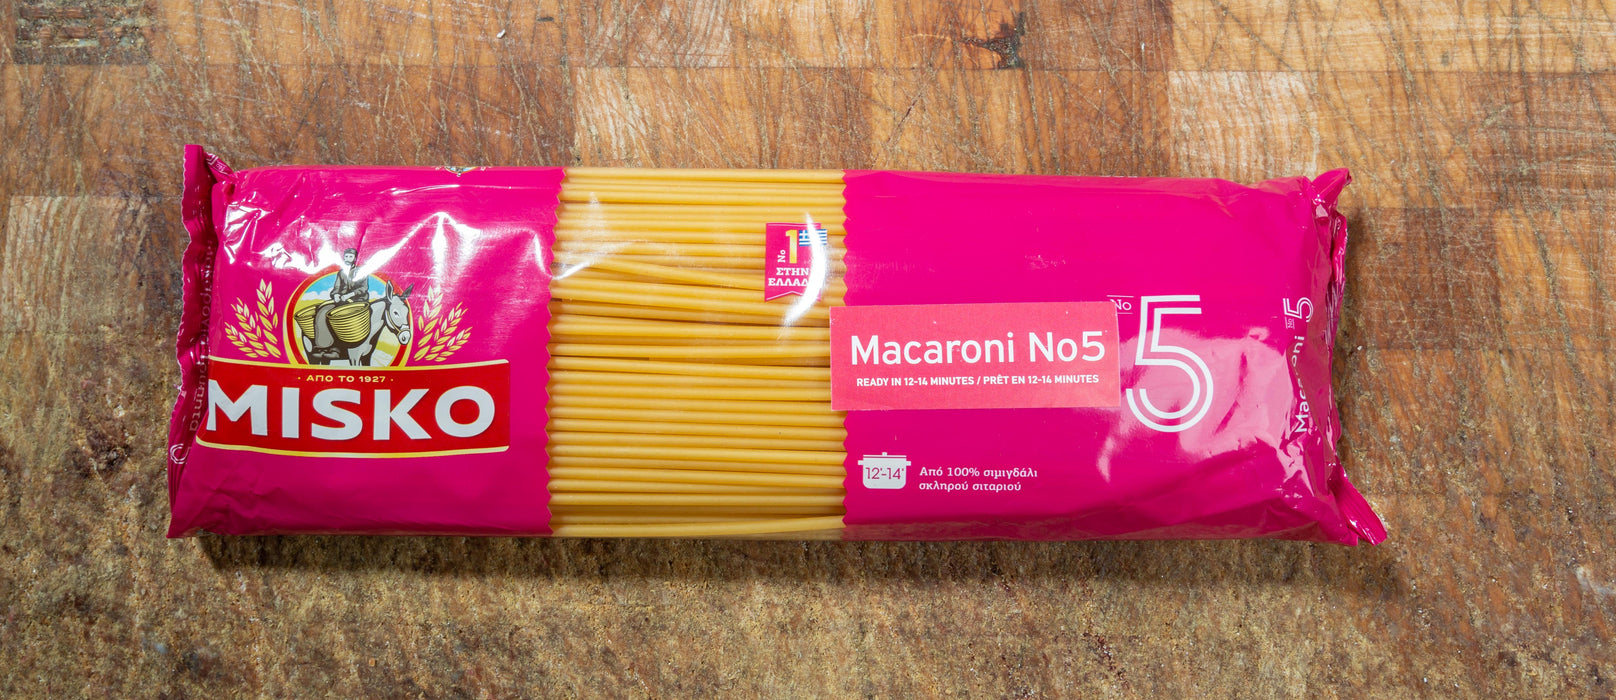 Misko Spaghetti no5